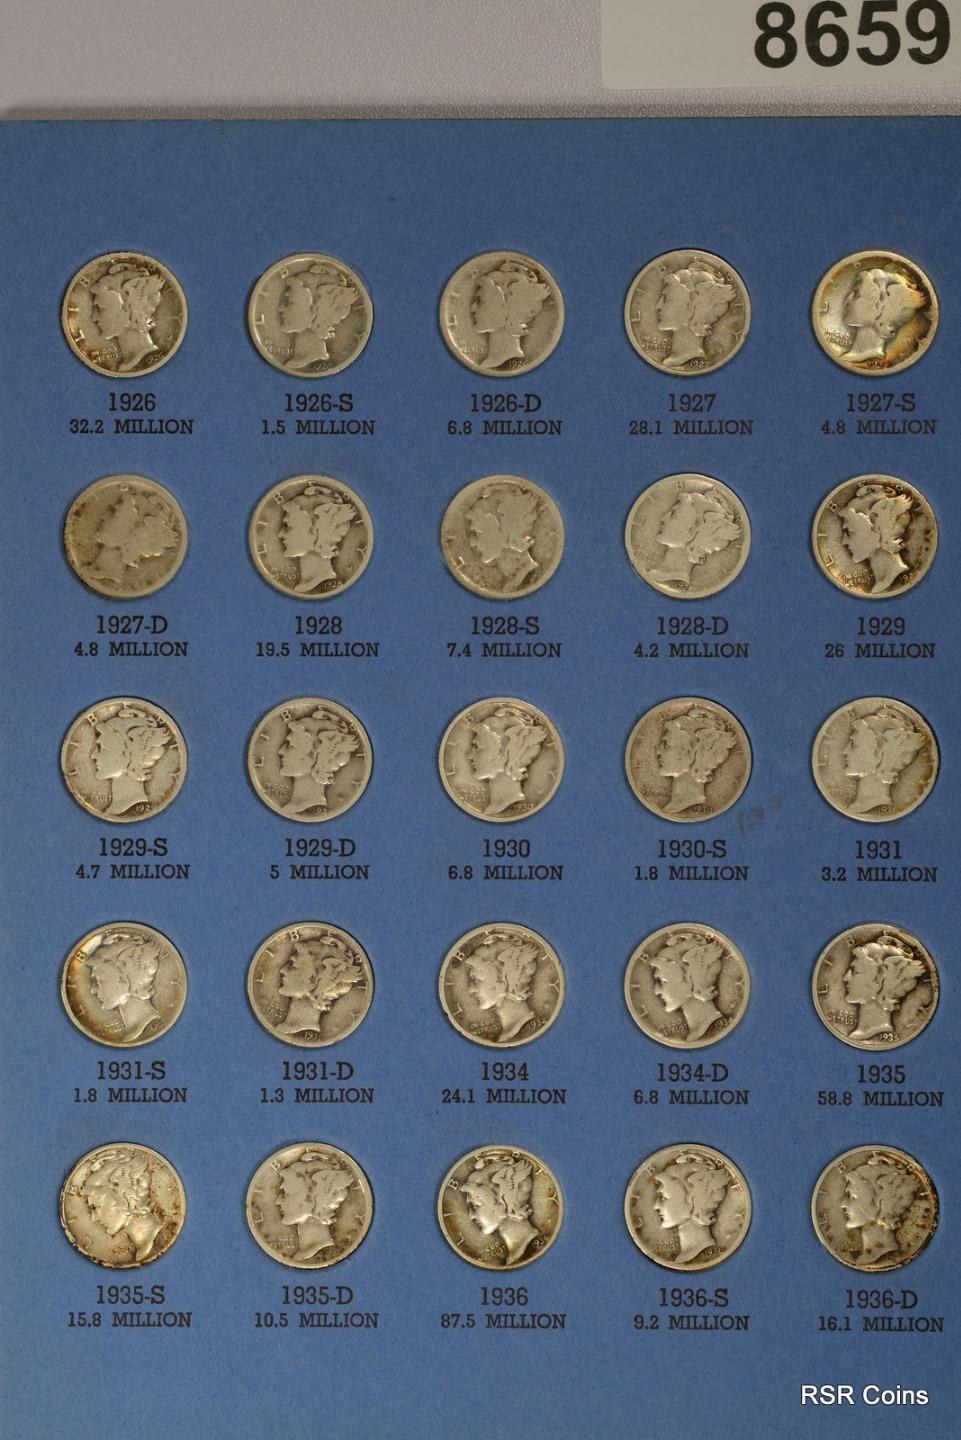 1916-1945 MERCURY DIME AG-VF+ 74 COIN LOT NO 16D, 21P&D 90% SILVER COINS #8659